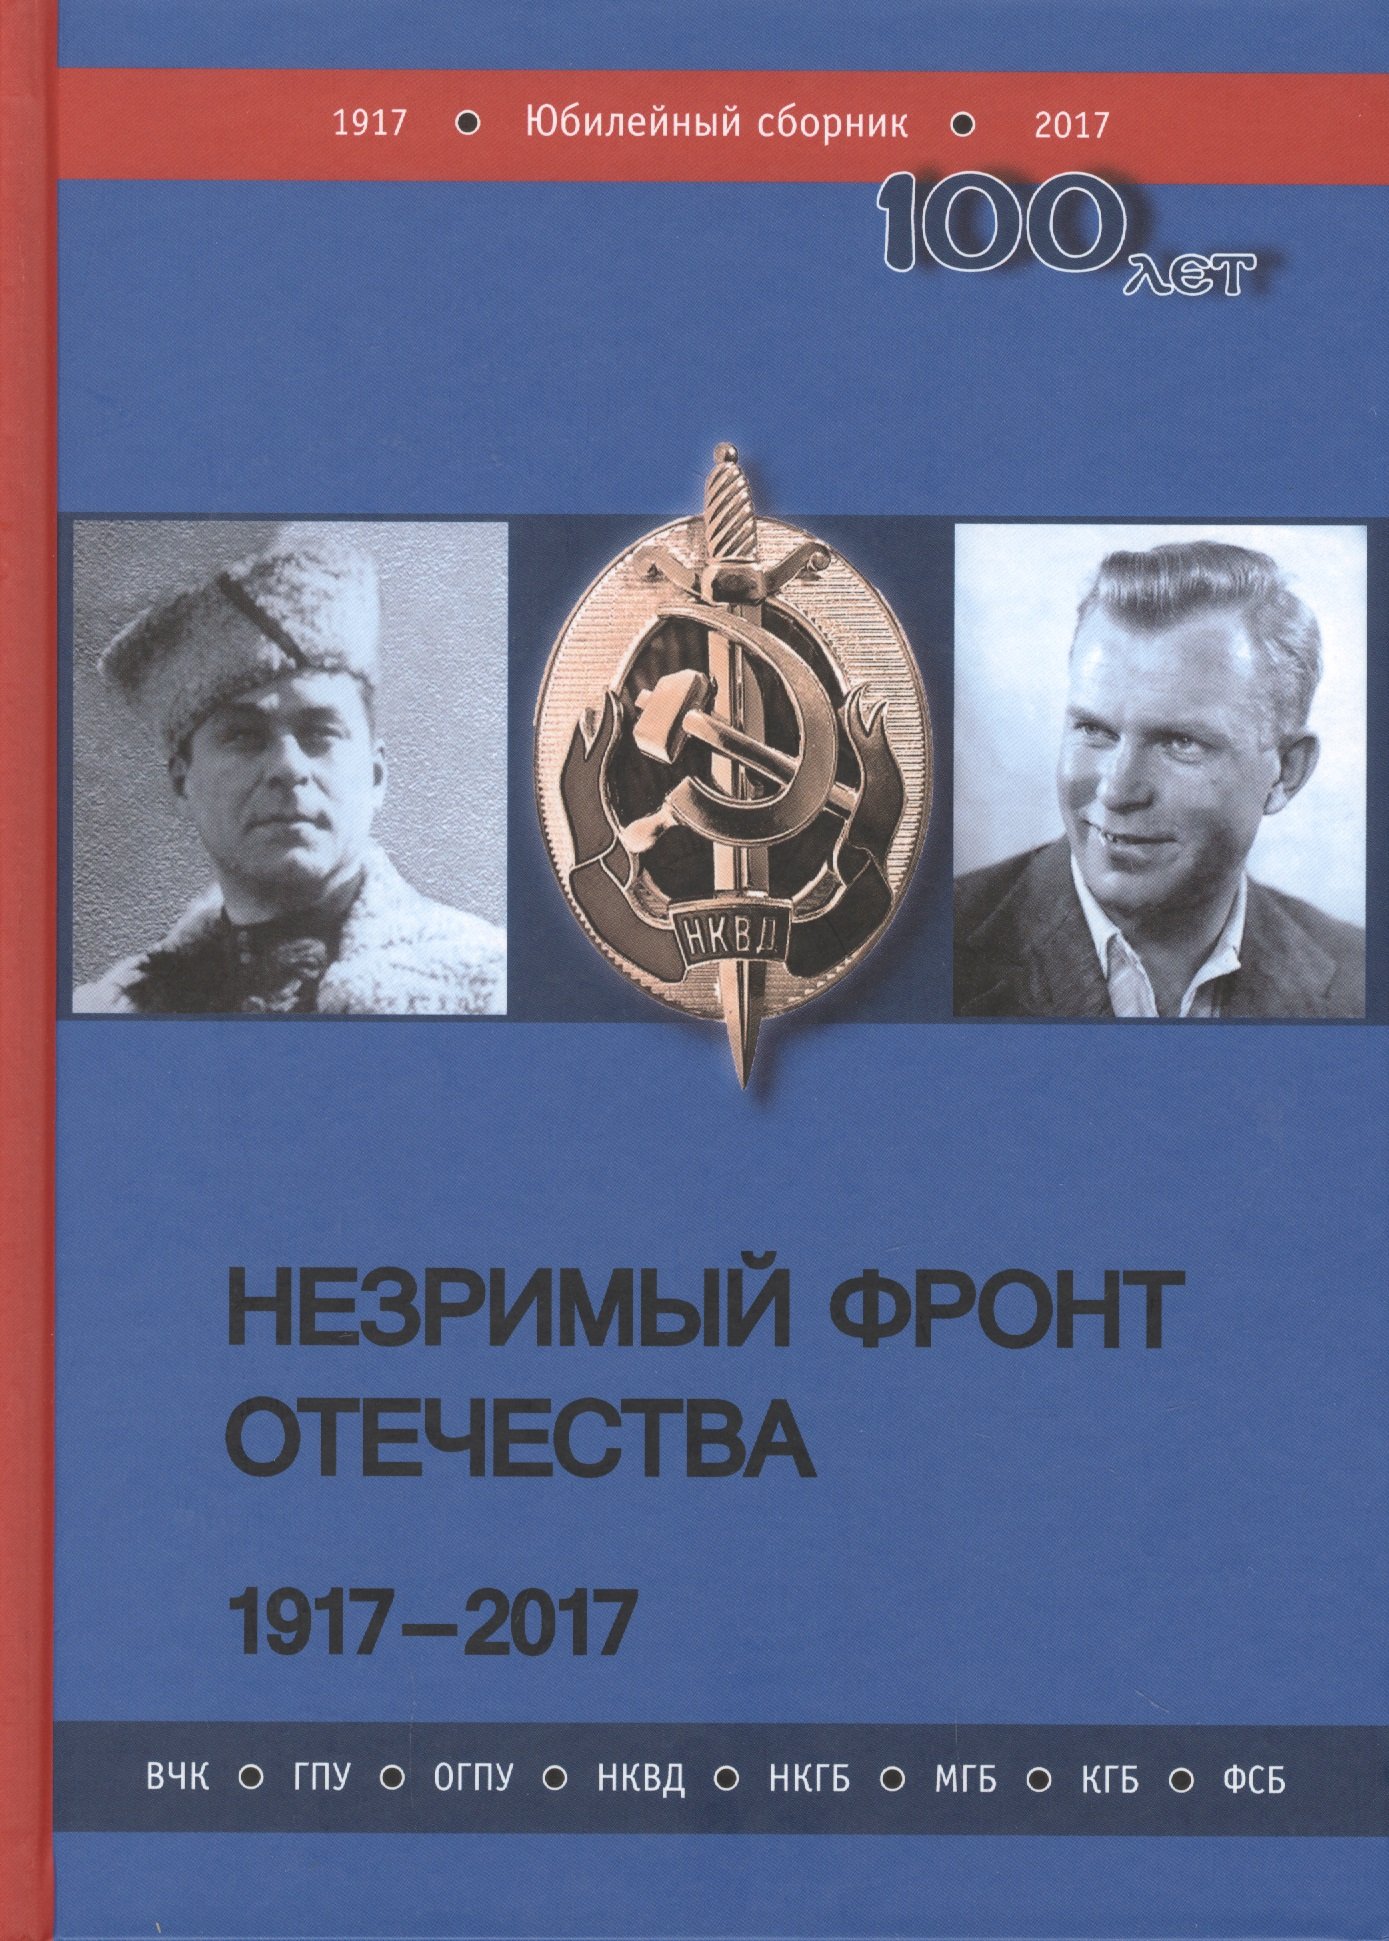   . 1917-2017:  2  (  2 )